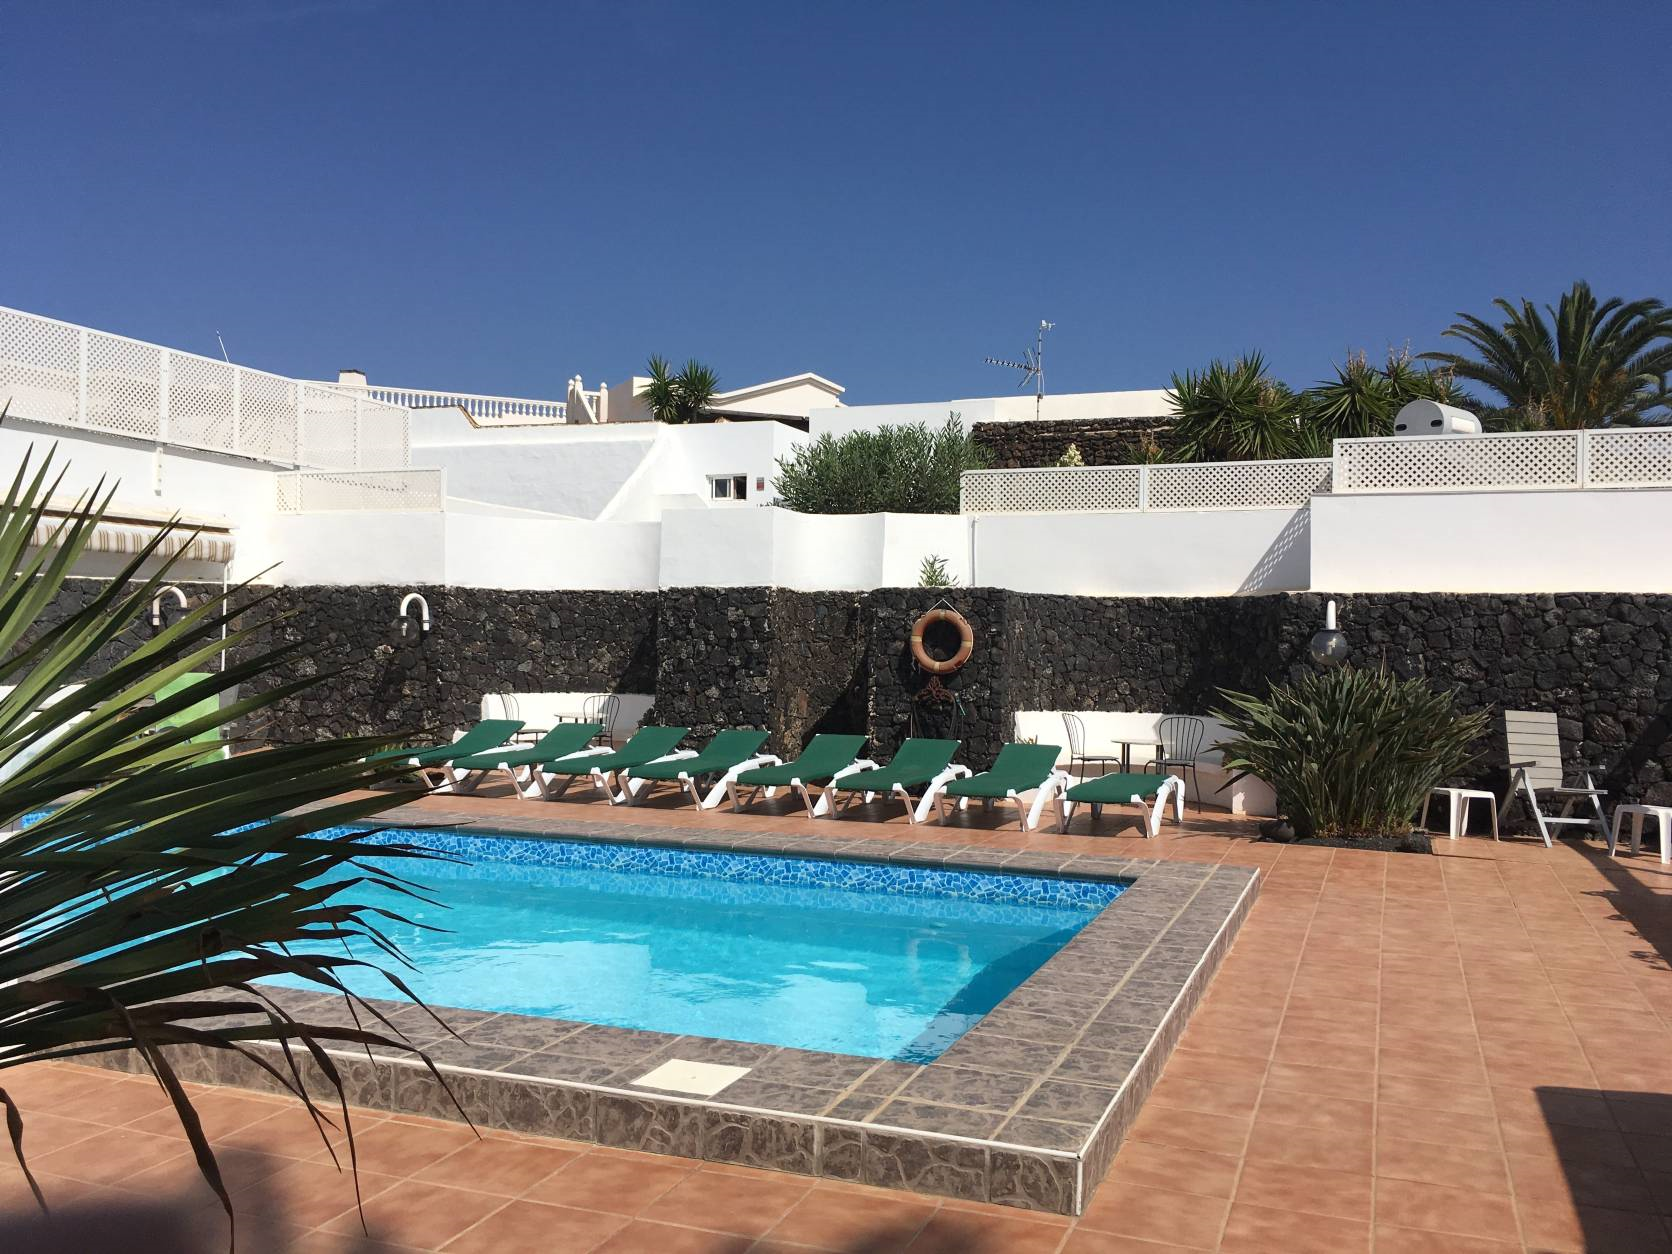 Ferienhaus in Costa Teguise mit Privatem Pool Ferienhaus in Spanien